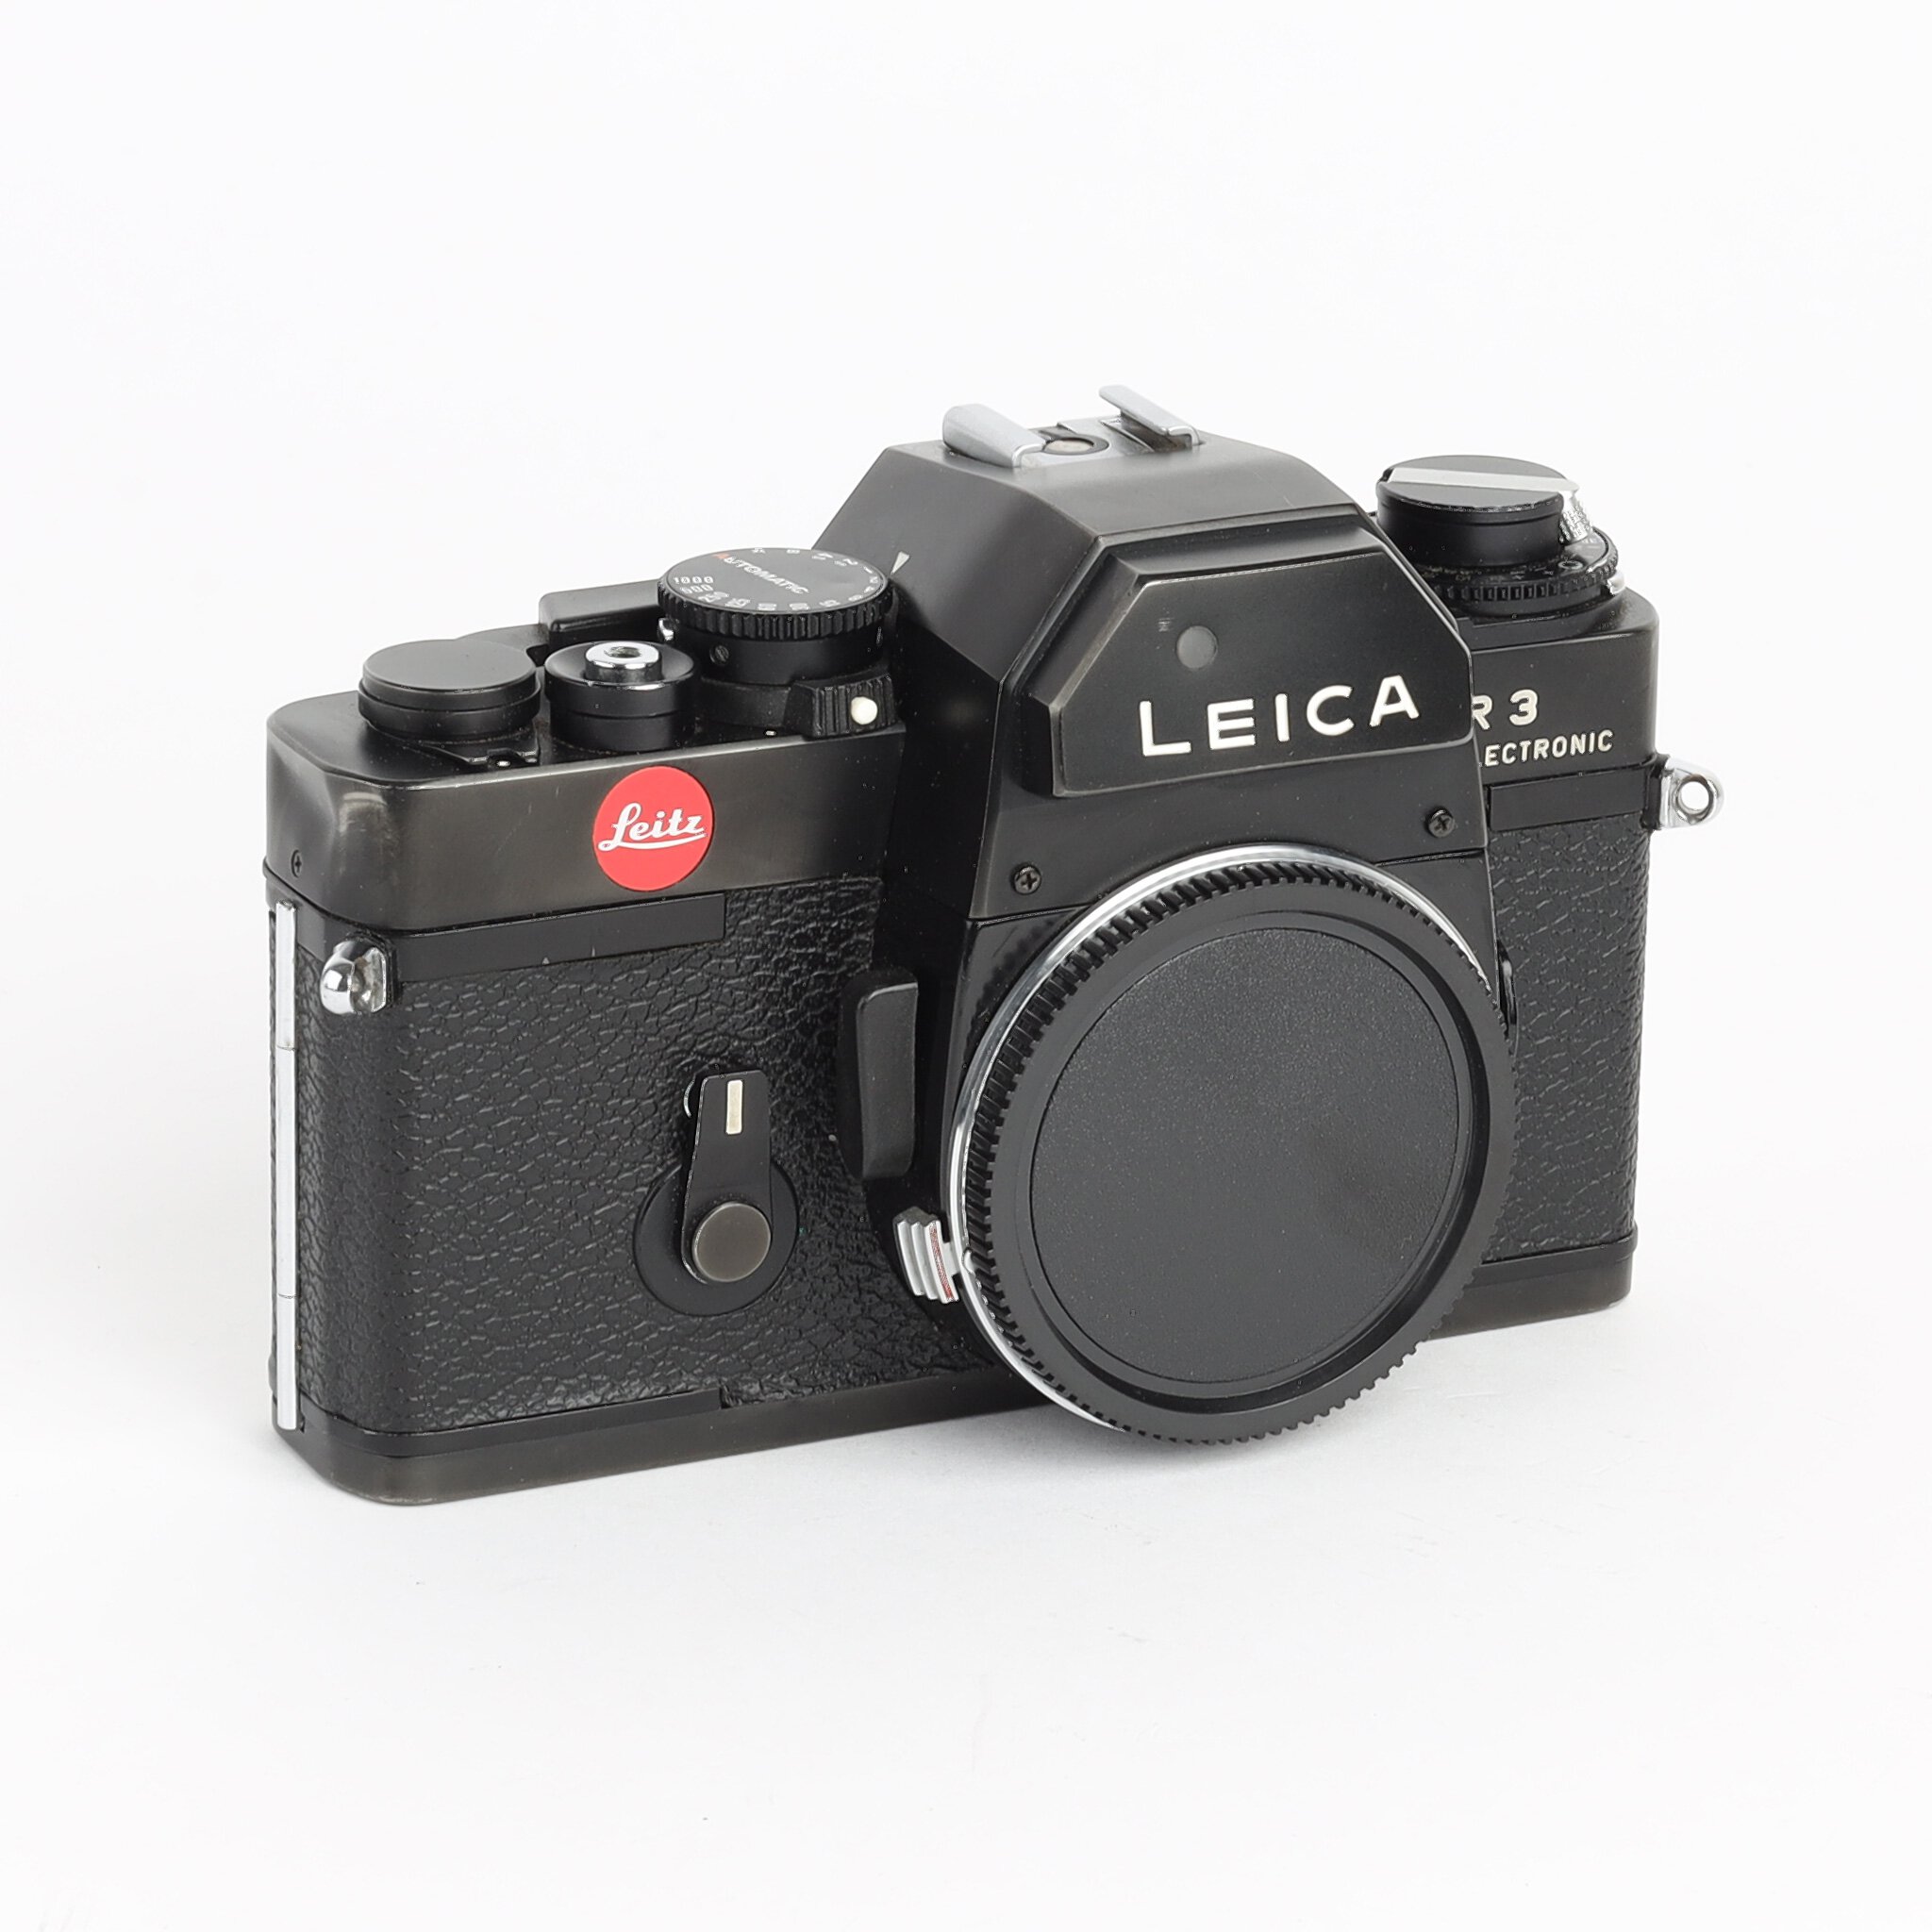 Leitz Leica R3 Electronic Gehäuse